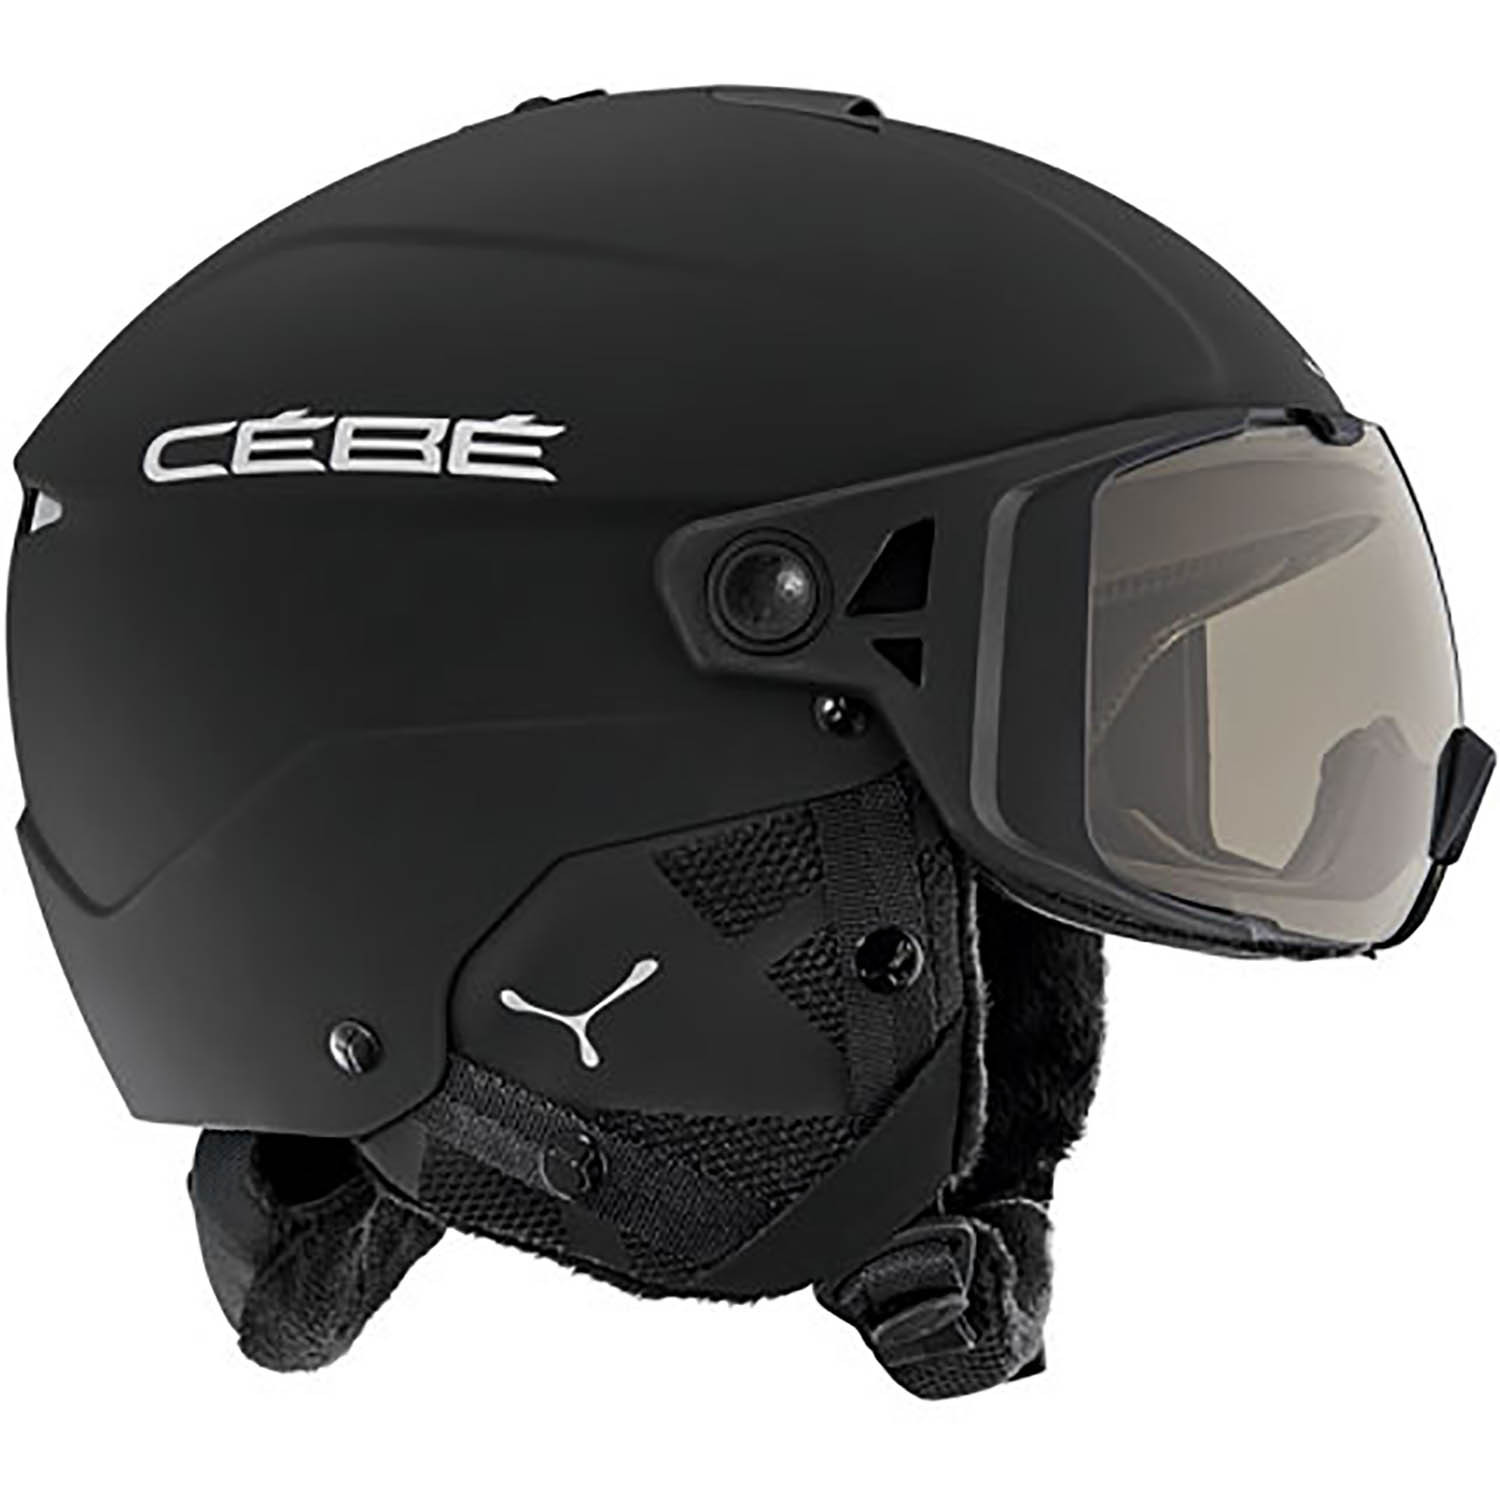 Купить горнолыжный шлем в москве. Шлем cebe element Visor. Шлем cebe горнолыжный. Cebe / шлем сноубордический. Шлем горнолыжный cebe мужской.